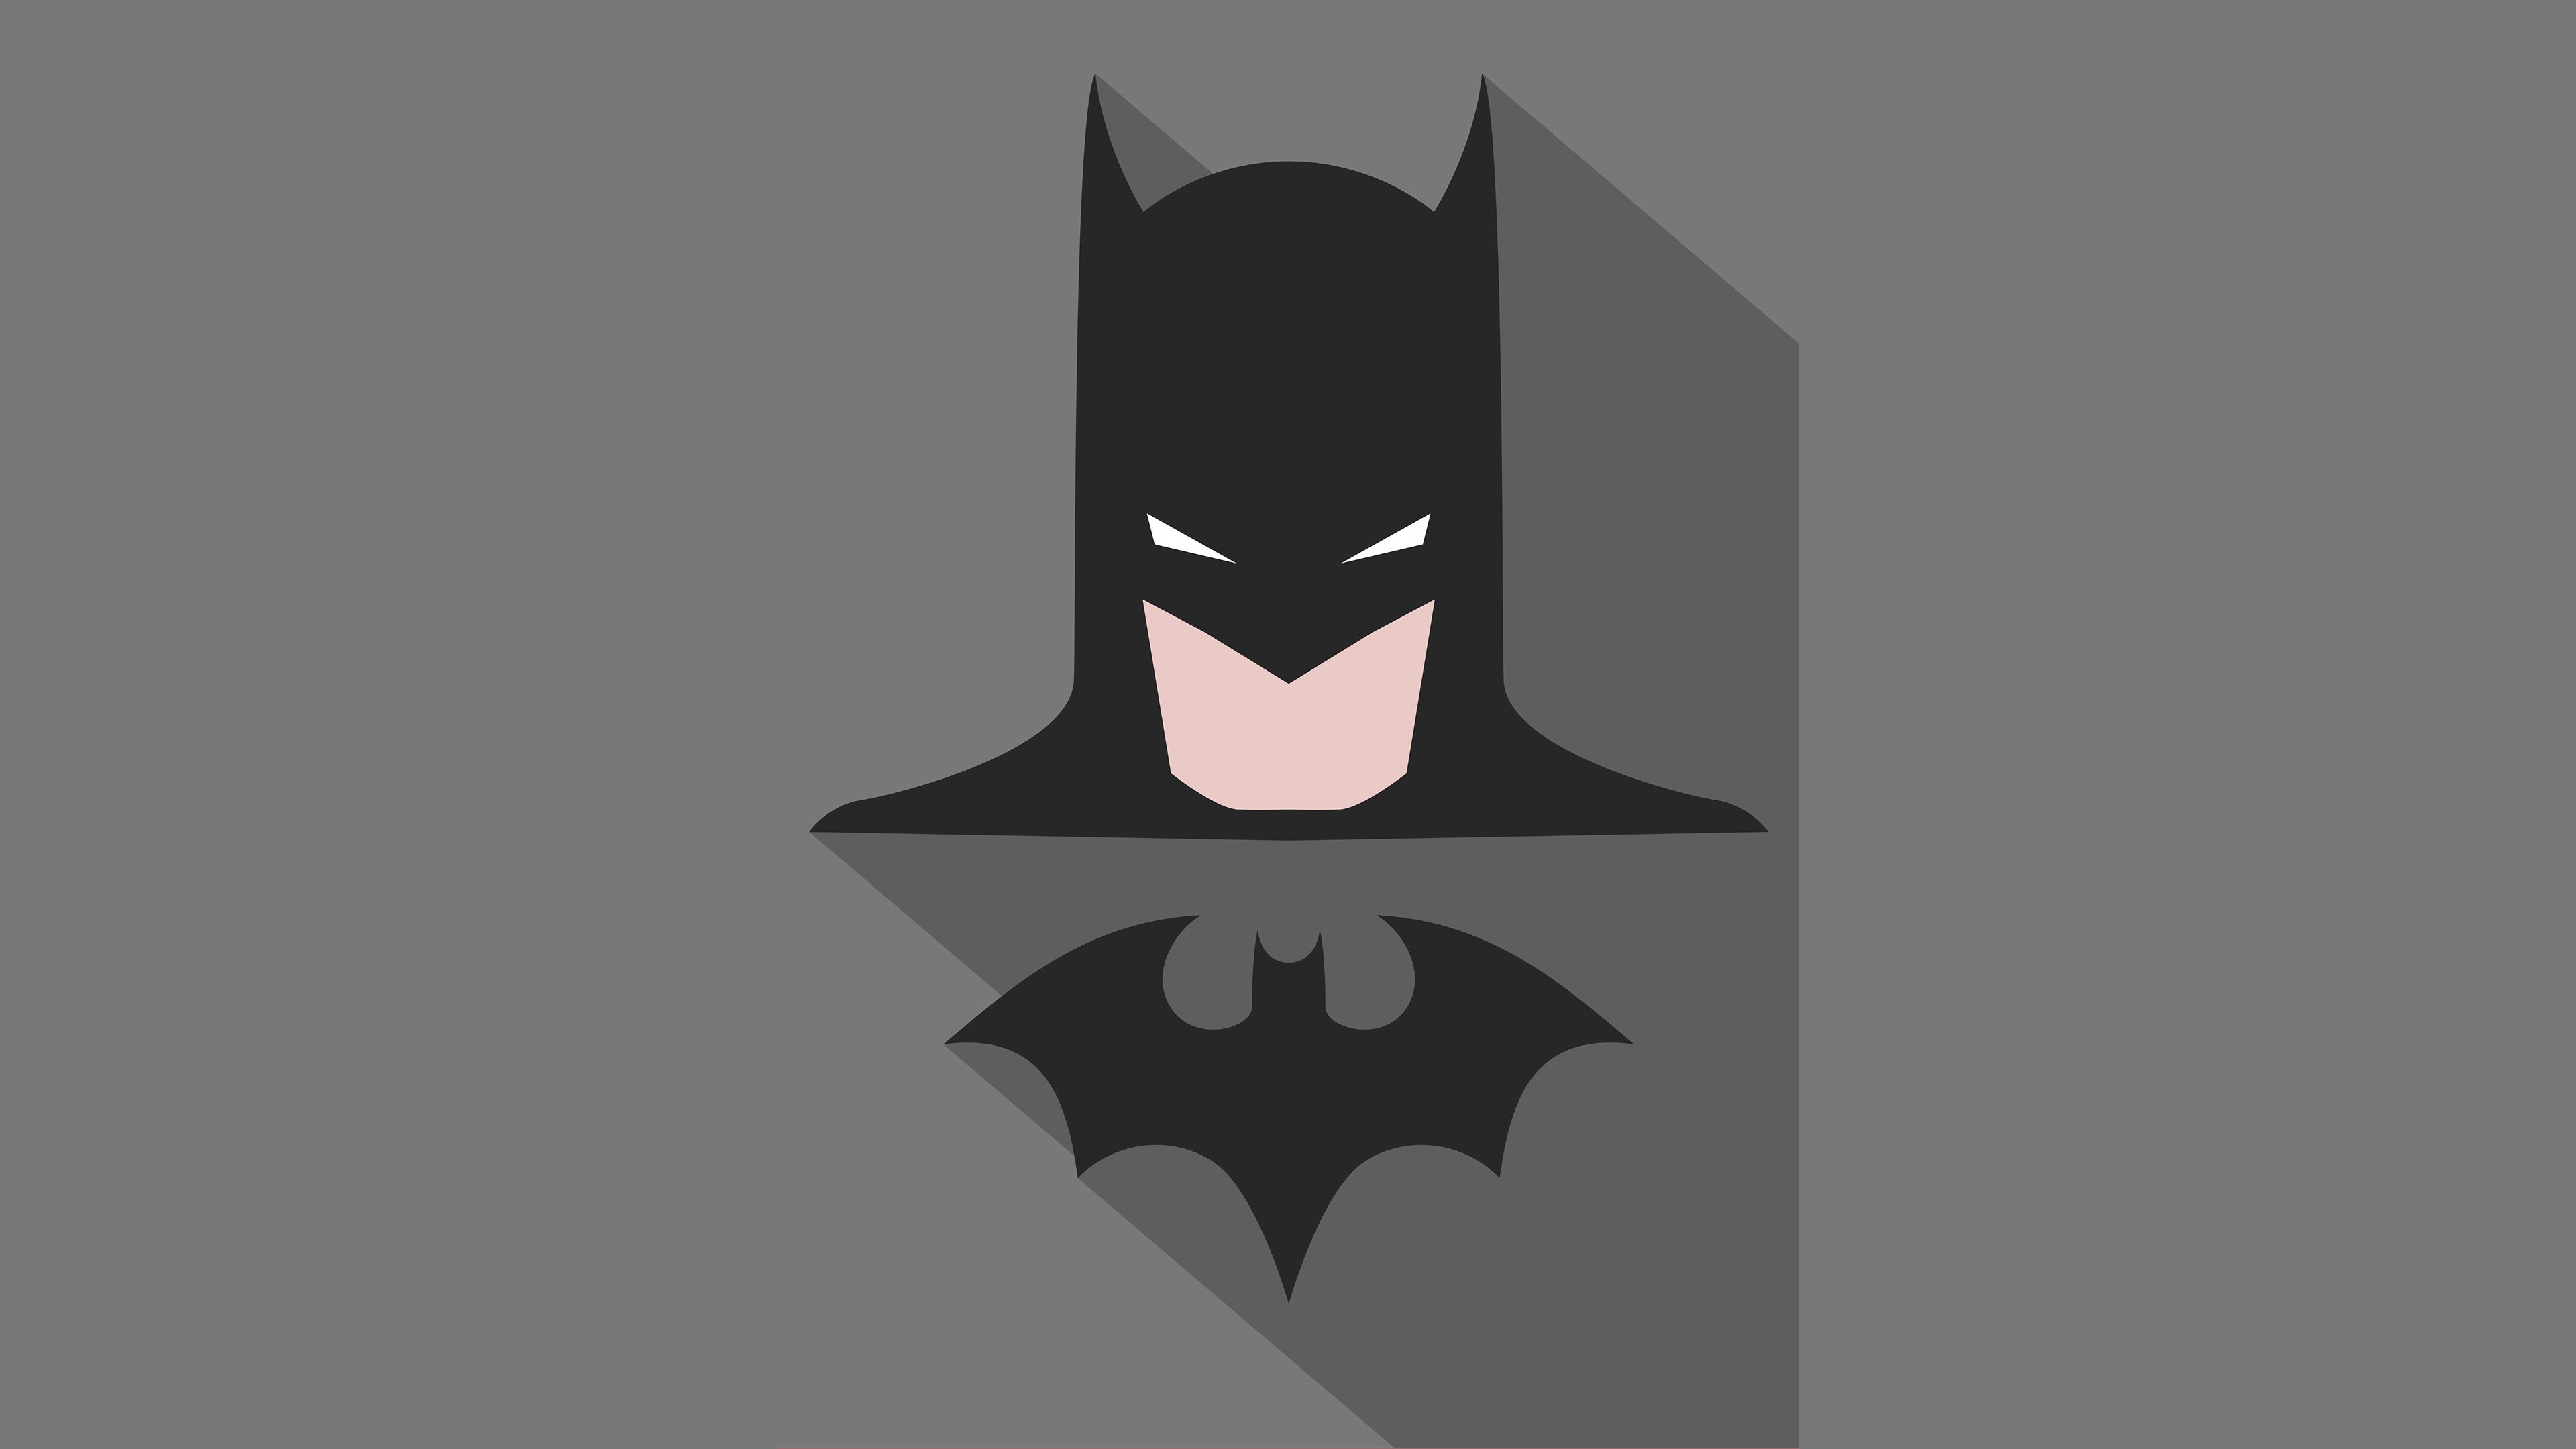 3840x2160 Batman 4k Ultra HD Wallpaper | Hintergrund |  | ID:849351 -  Wallpaper Abyss